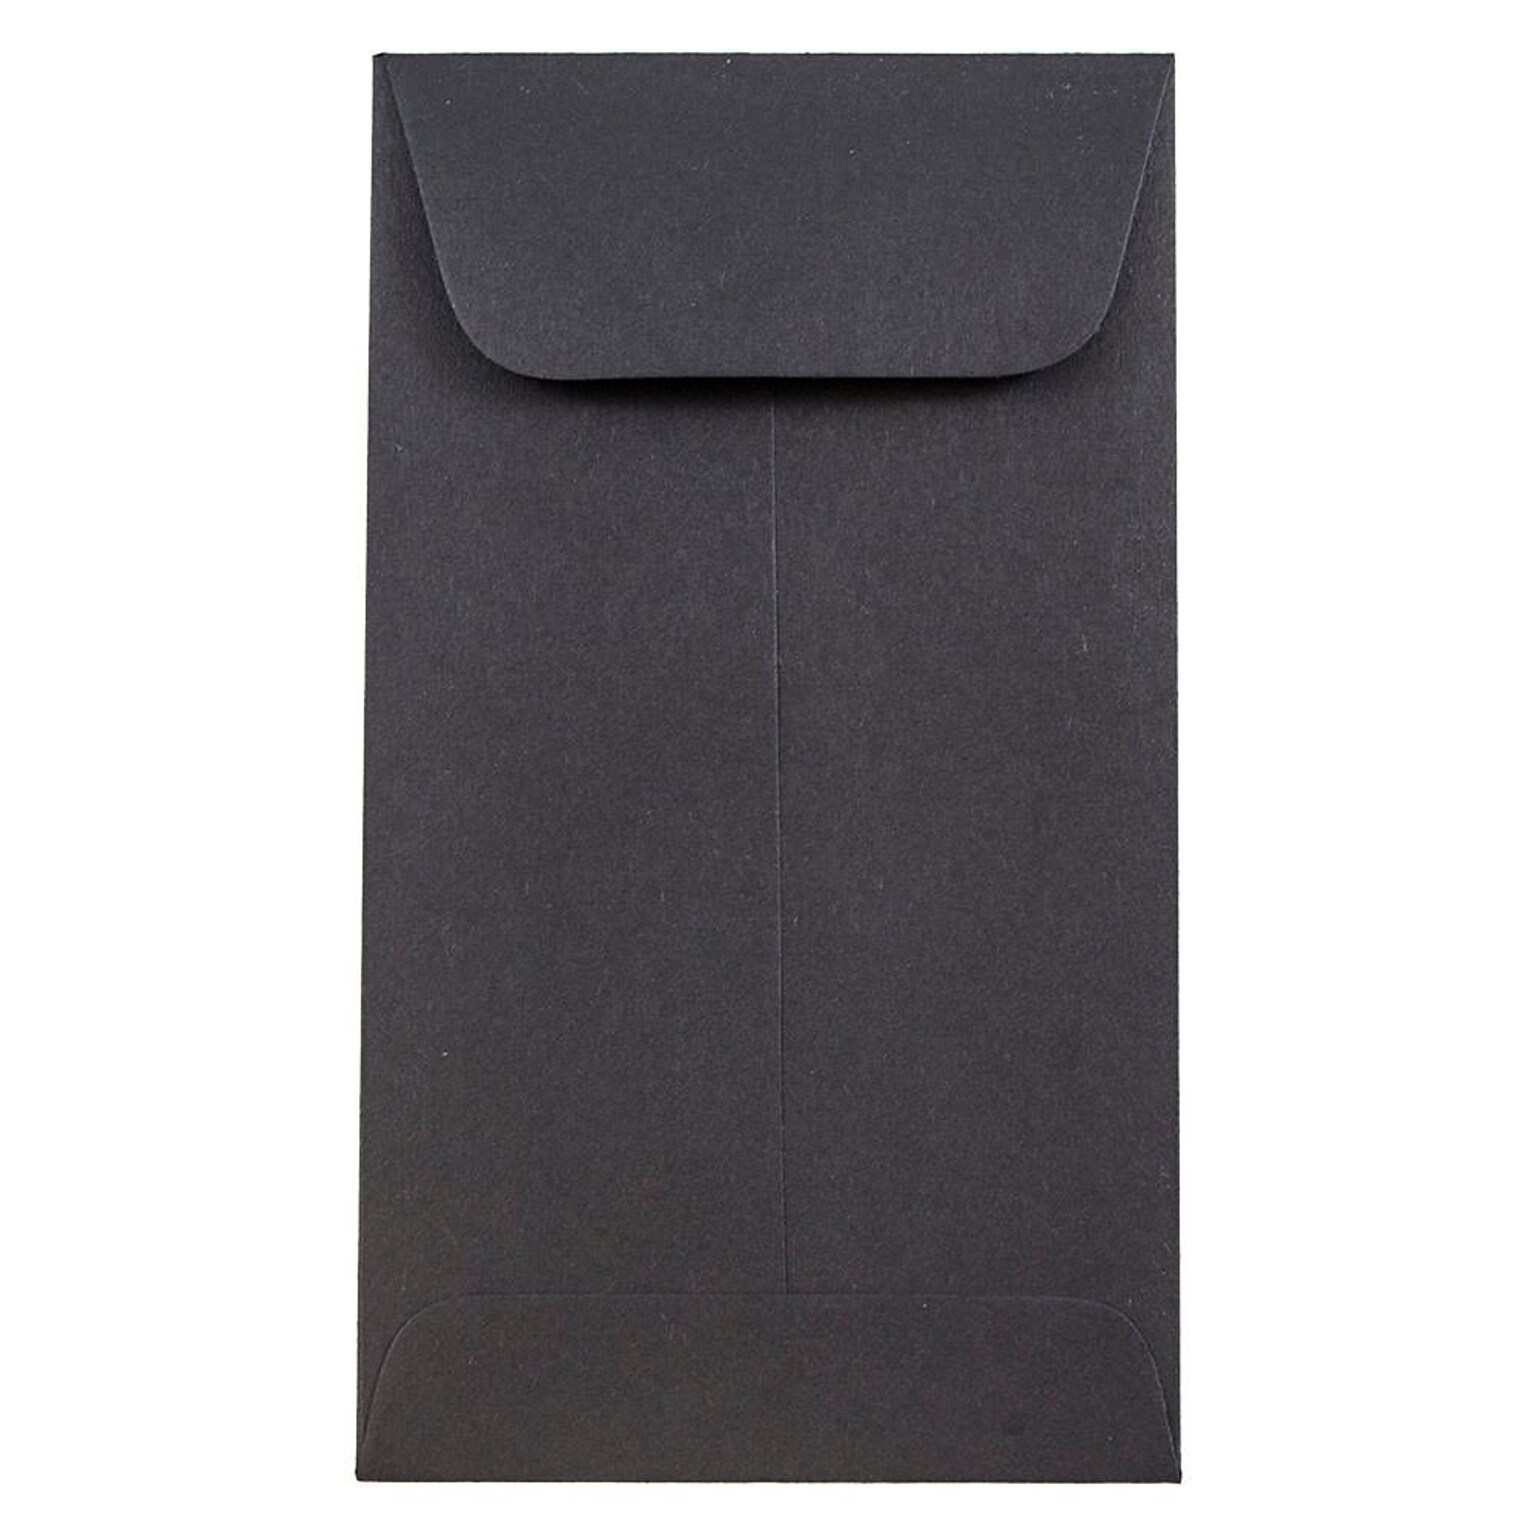 JAM Paper® #6 Coin Business Envelopes, 3.375 x 6, Black, 100/Pack (356730564B)